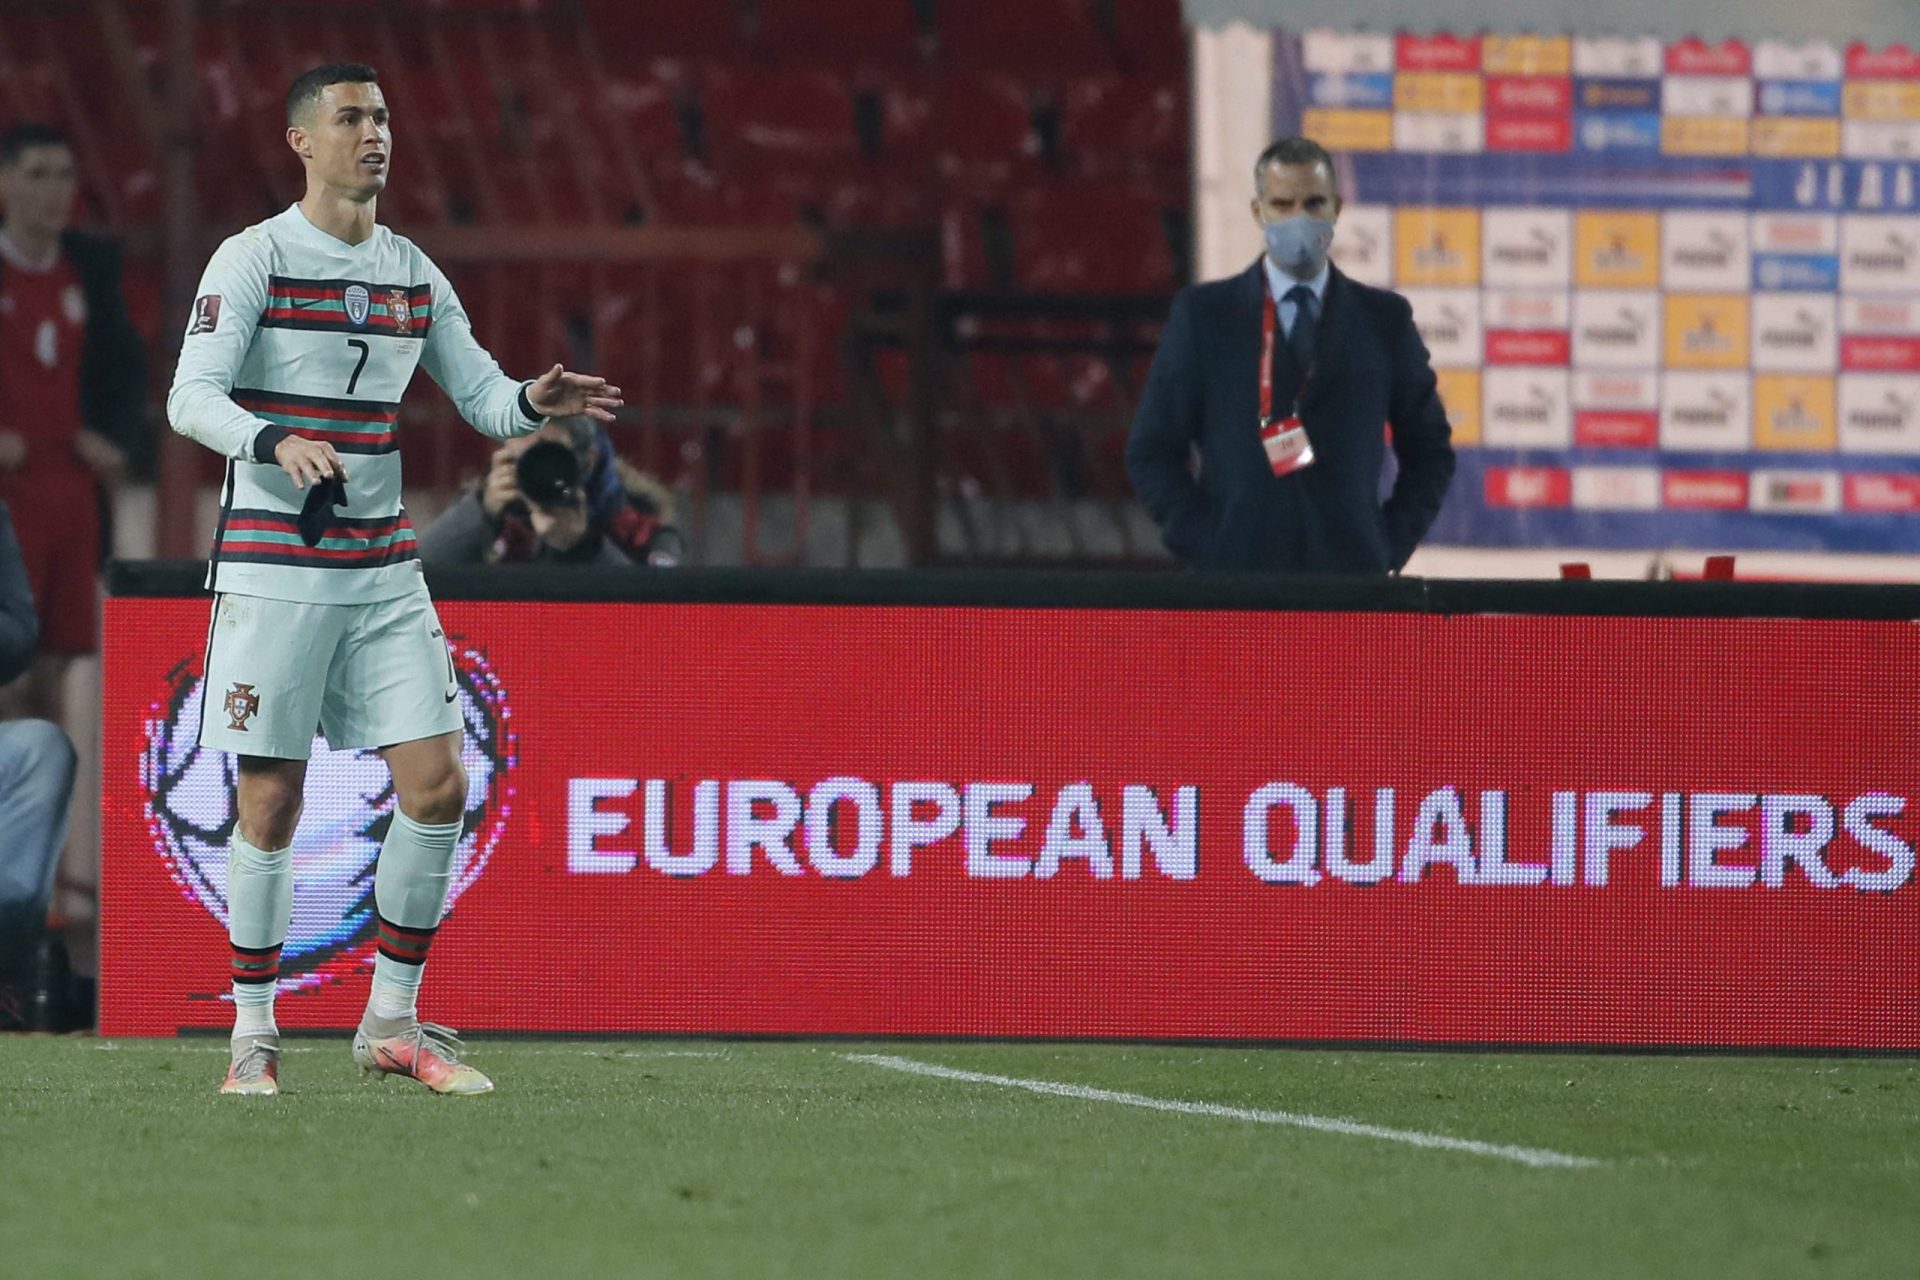 O polémico lance que levou Ronaldo a abandonar o campo no final do encontro com a Sérvia | Vídeo